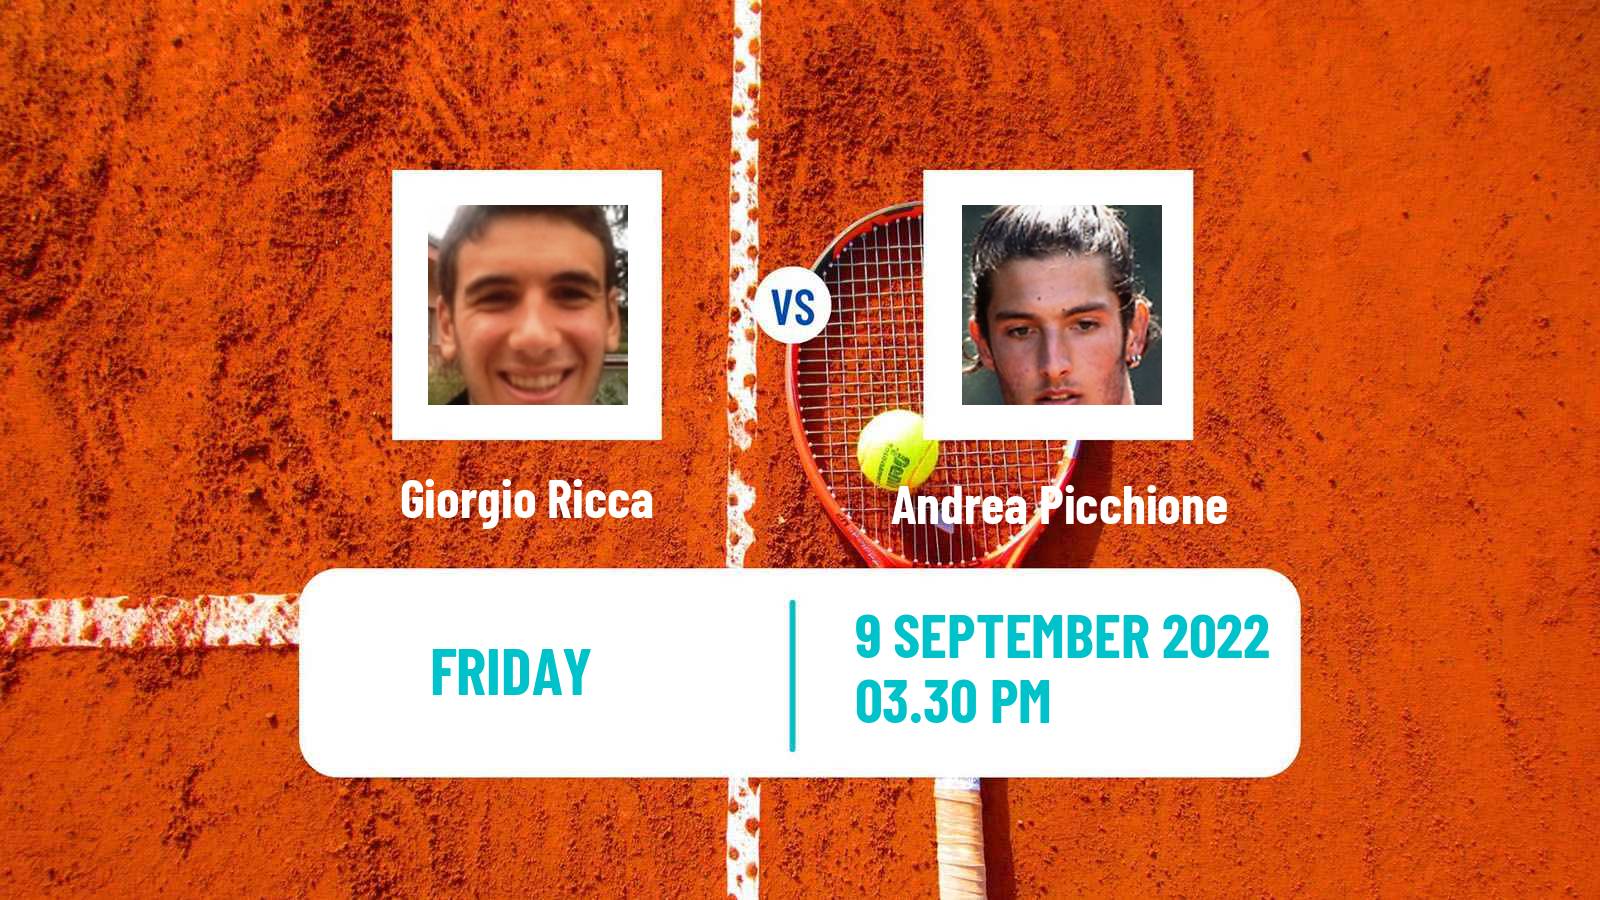 Tennis ITF Tournaments Giorgio Ricca - Andrea Picchione